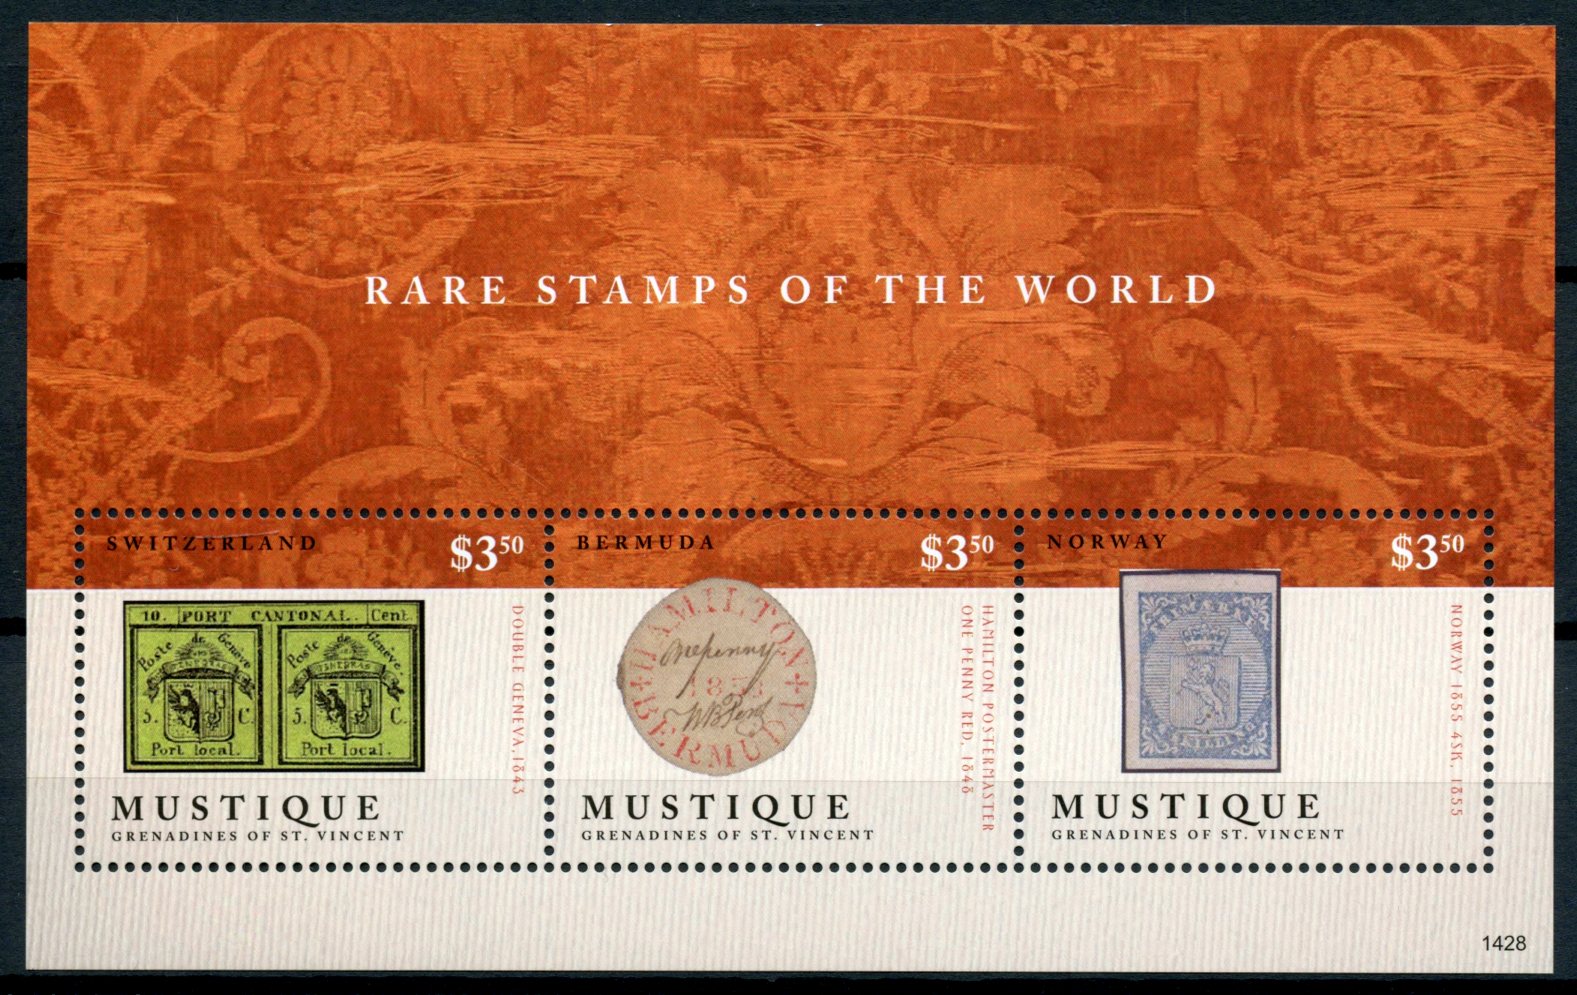 Mustique Grenadines St Vincent 2014 MNH Rare Stamps World 3v M/S Geneva Double